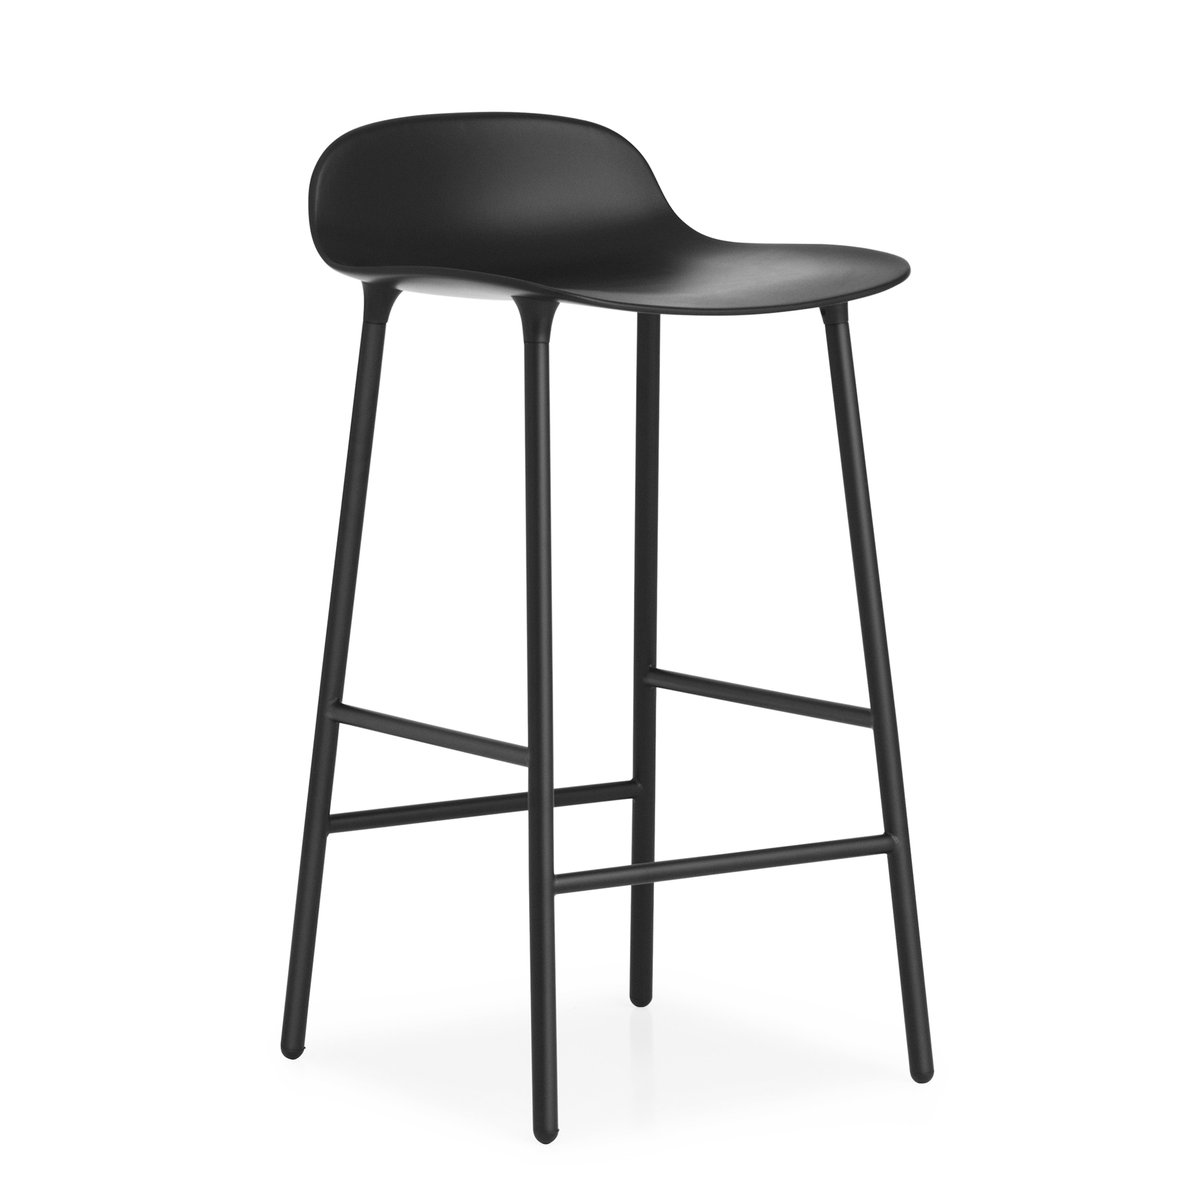 Bilde av Normann Copenhagen Form Chair barstol metallben svart